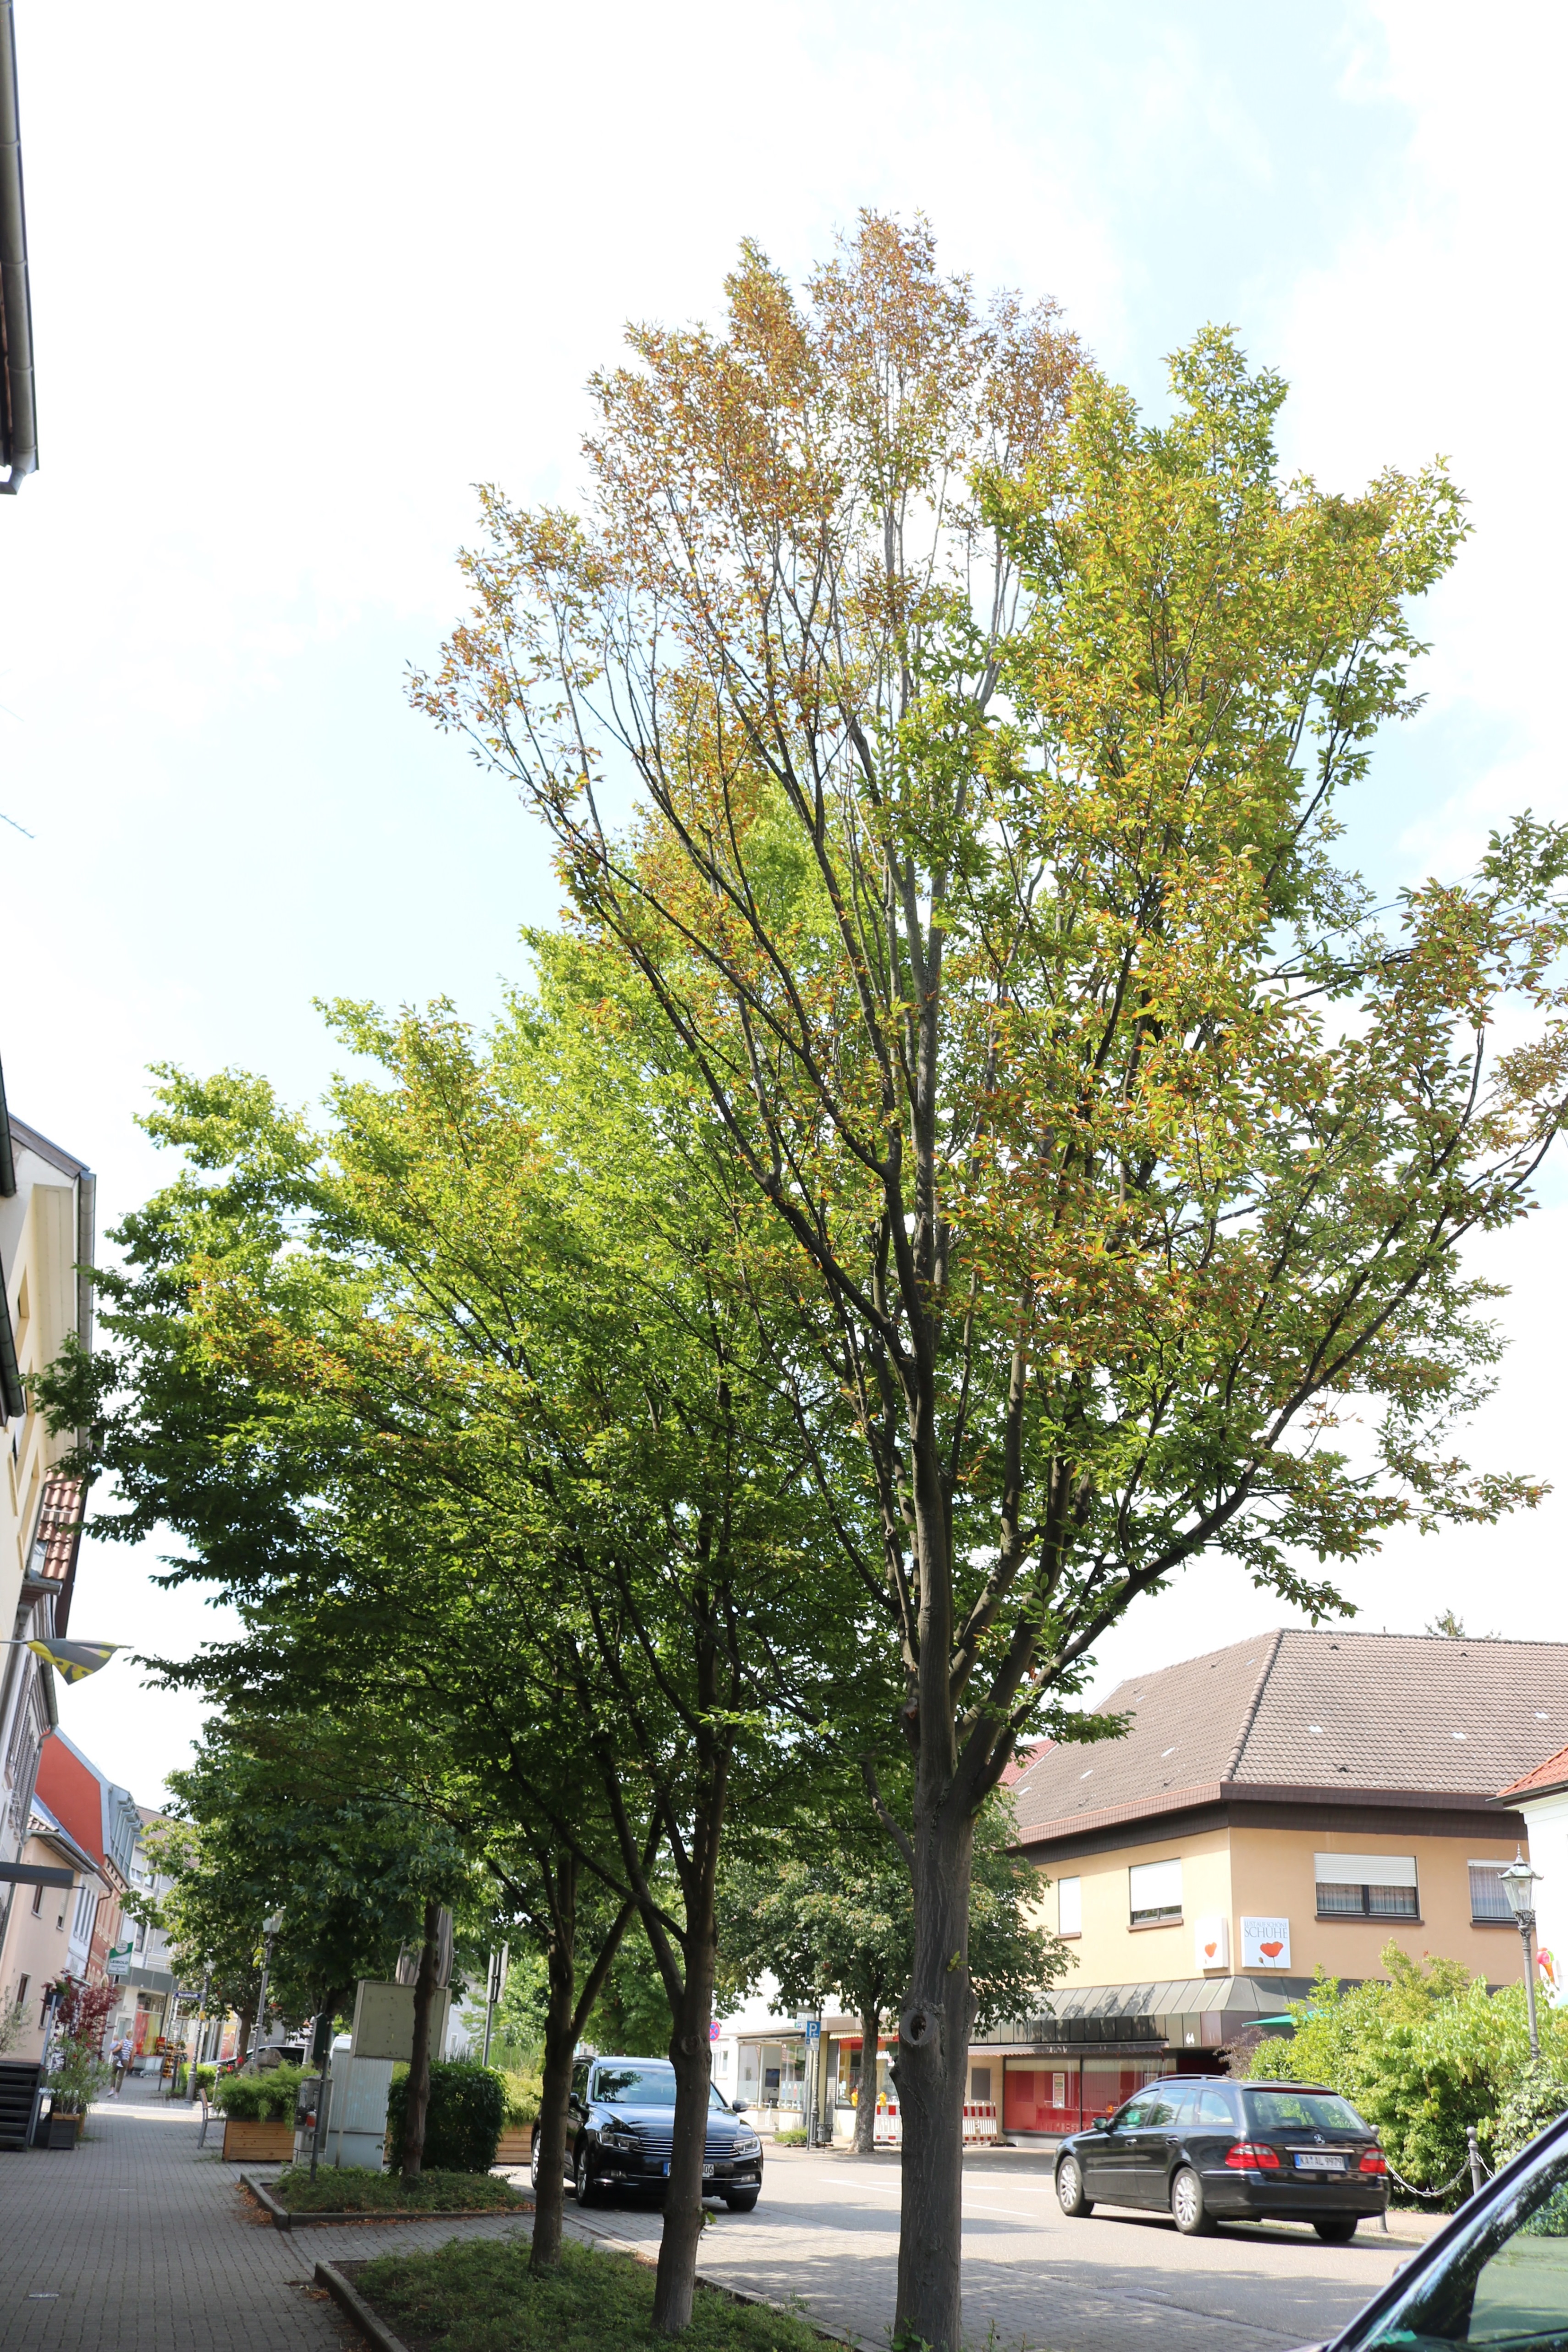  Baum an der Straße Beispiel 